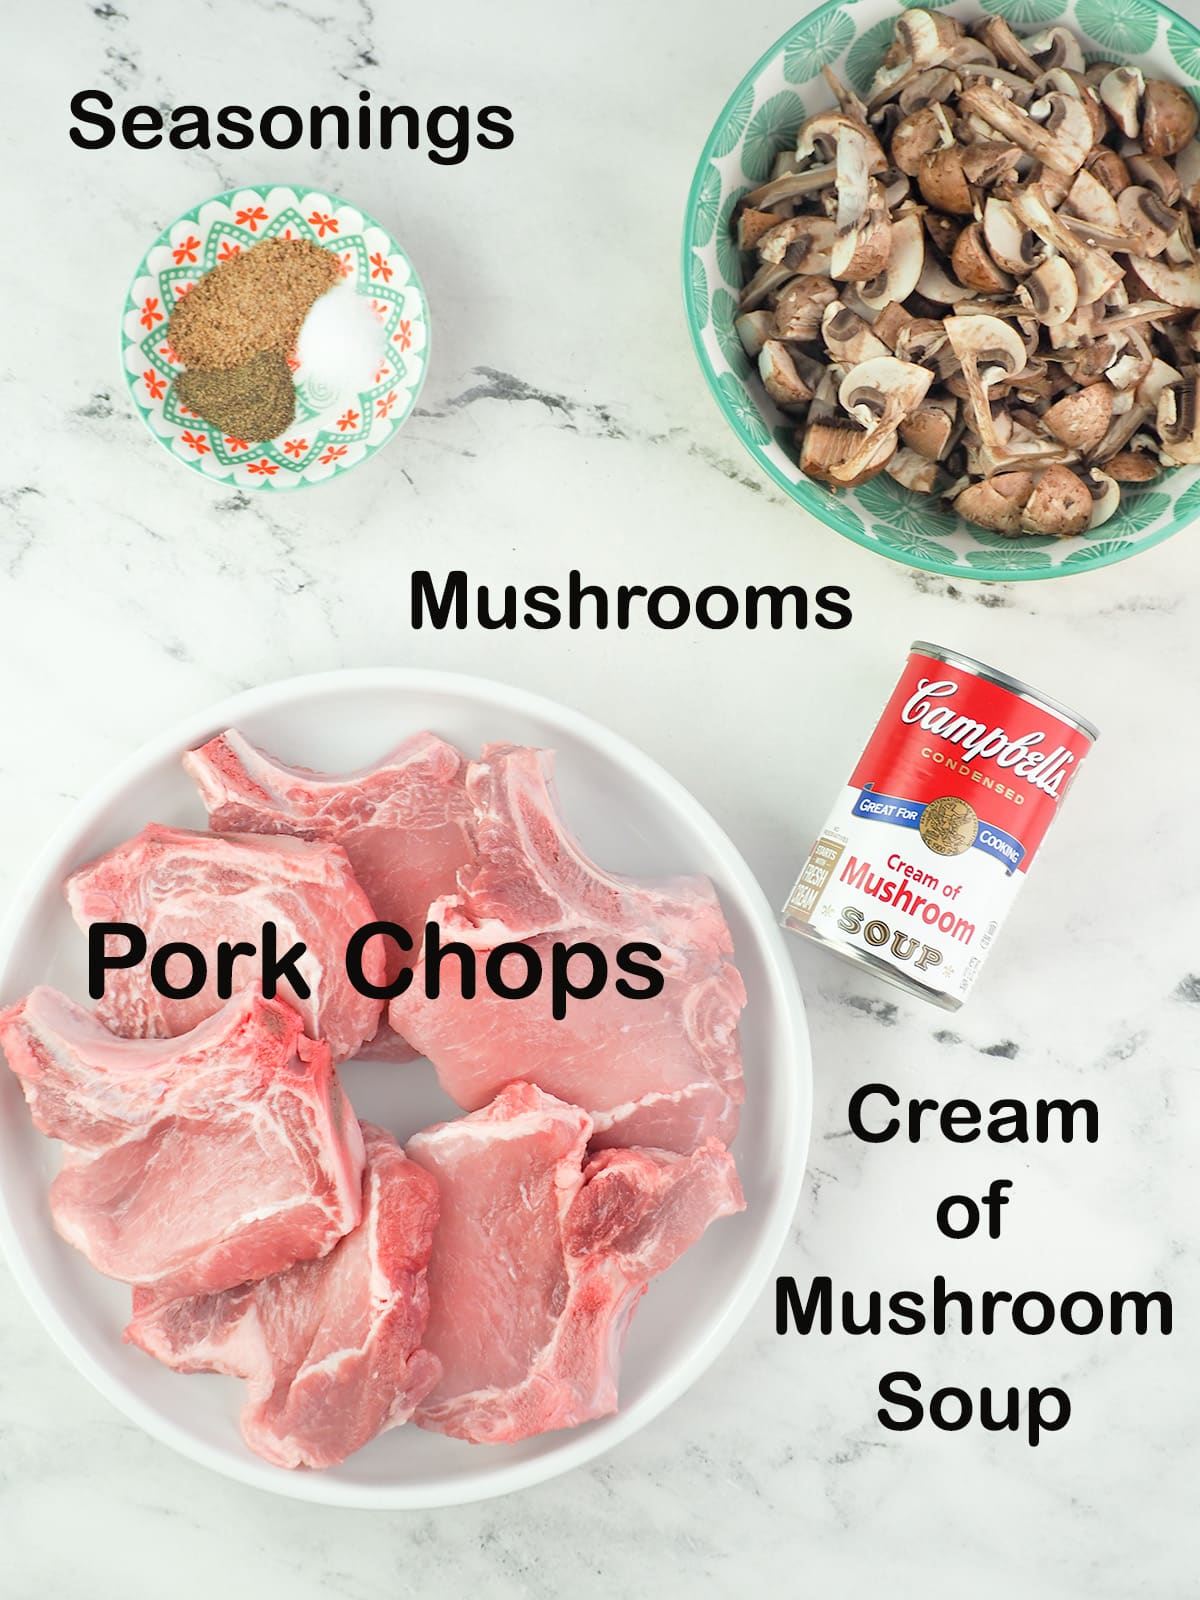 Ingredients for cream of mushroom pork chops: pork chops, a can of cream of mushroom soup, salt, pepper, Everglades seasonings, and sliced mushrooms.